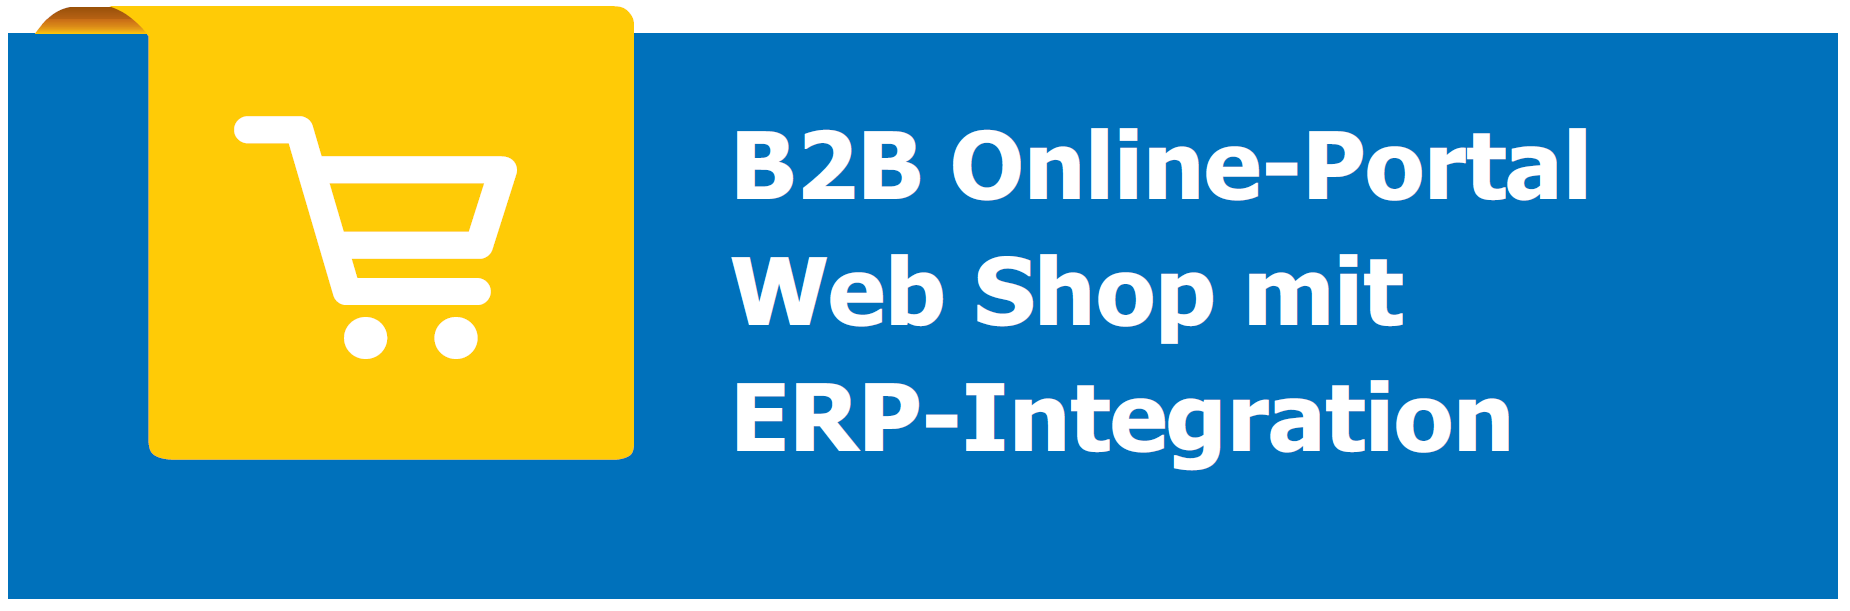 B2B-Online-Portal und Online-Konfigurator im Webshop mit ERP-Integration